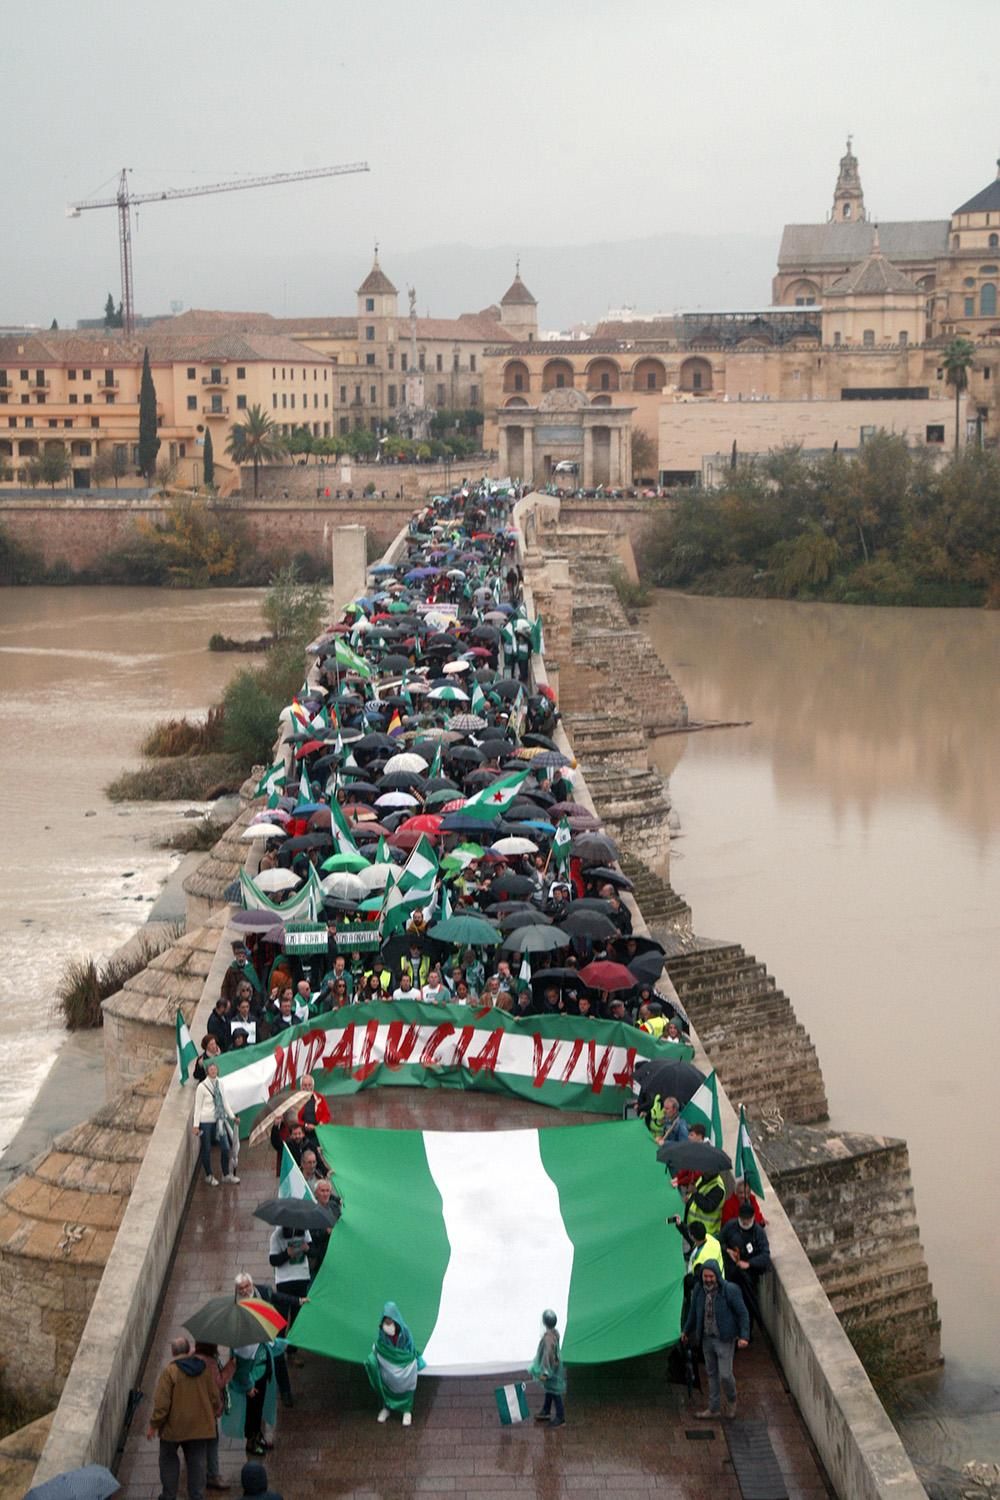 Unas 2.000 personas marchan en Córdoba para que "Andalucía despierte"